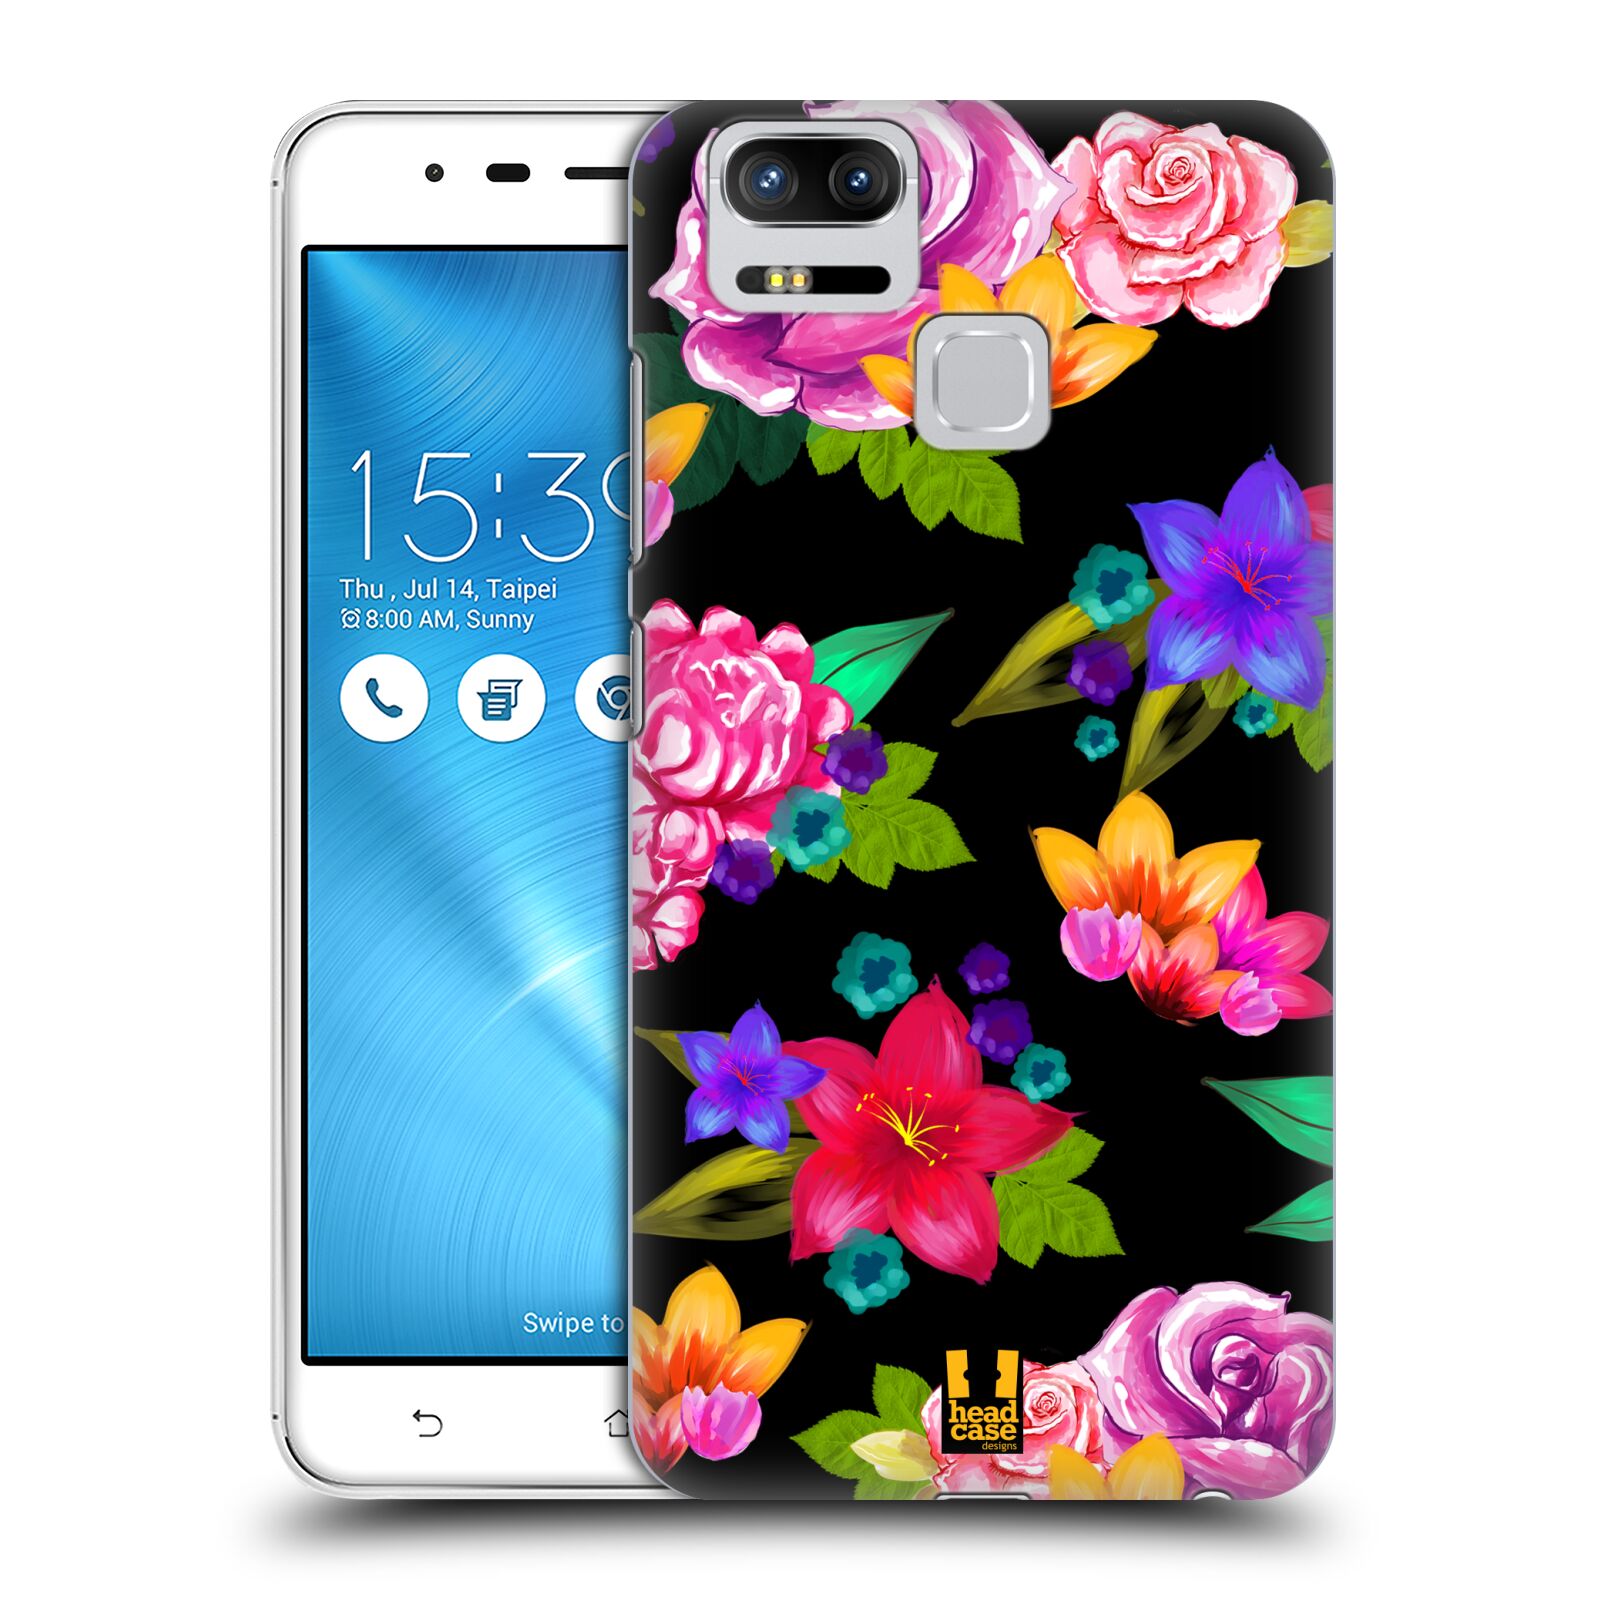 HEAD CASE plastový obal na mobil Asus Zenfone 3 Zoom ZE553KL vzor Malované květiny barevné ČERNÁ